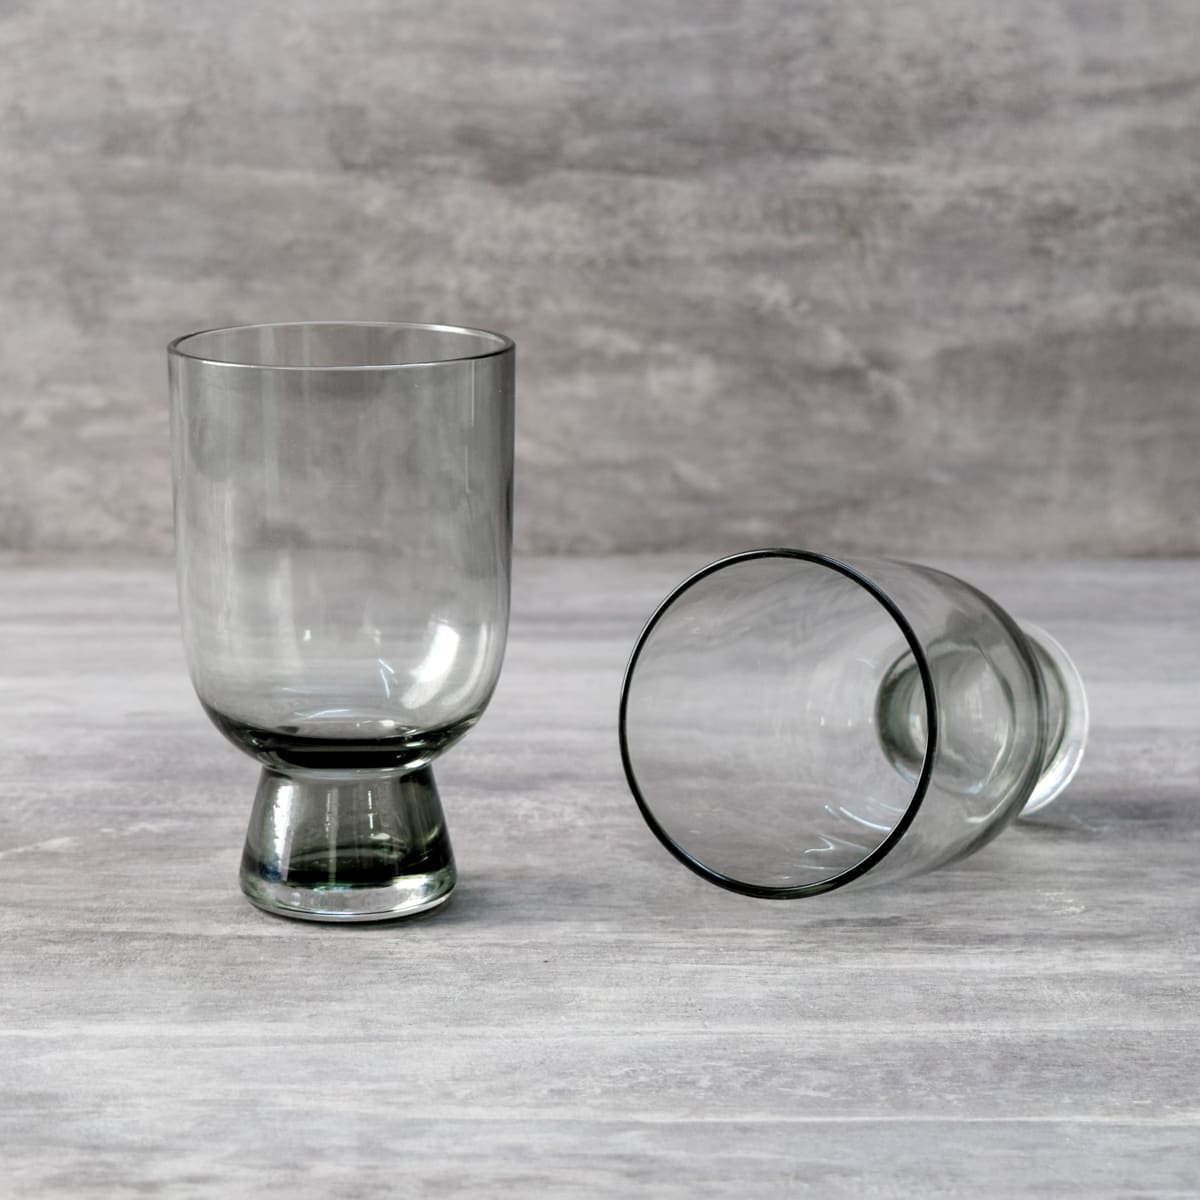 Nicolas Smoky Grey Drinking Glass (Set of 2) - Home Artisan